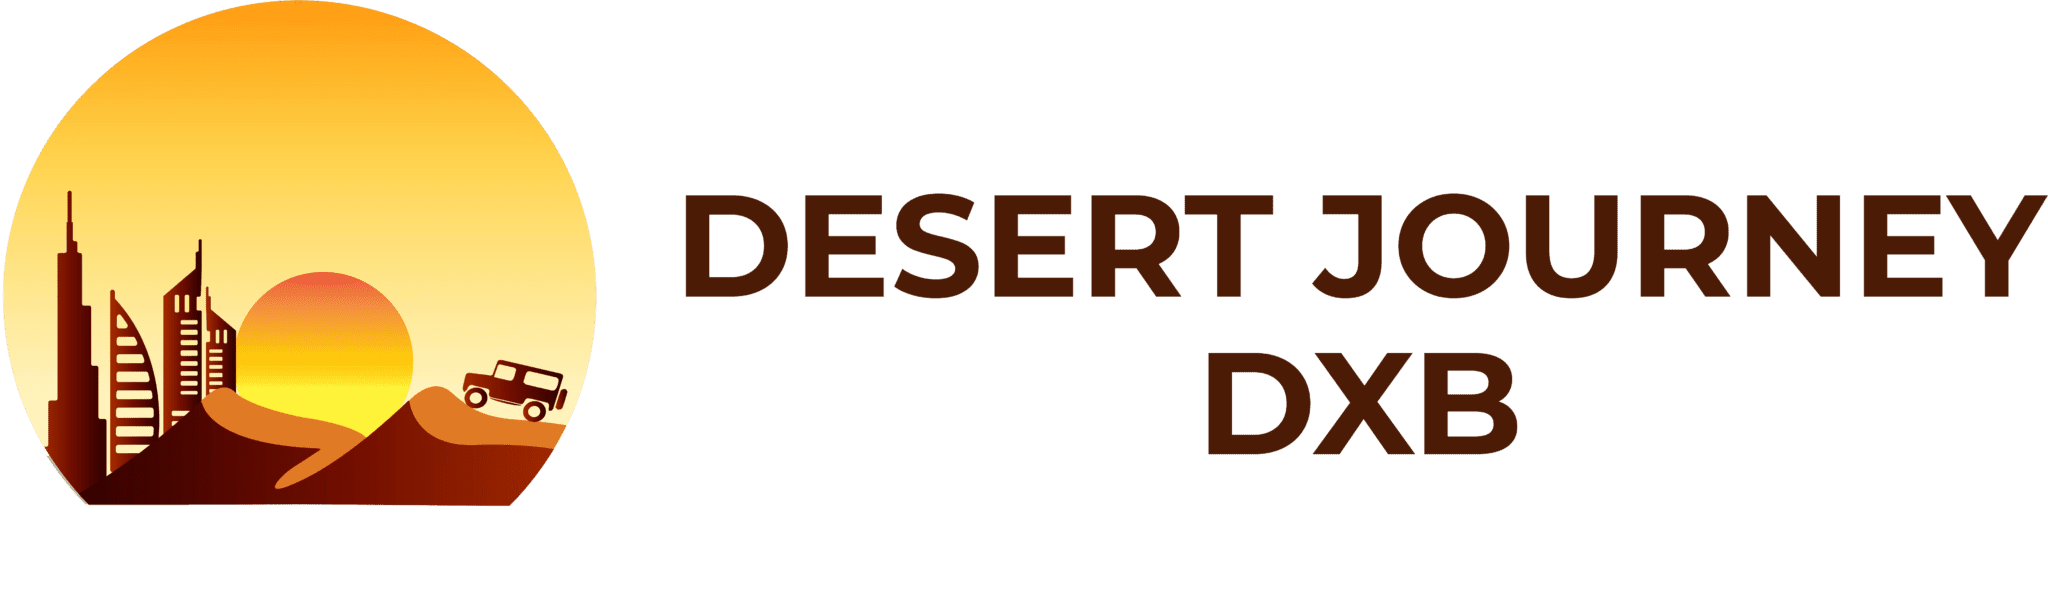 Desert Journey DXB Logo